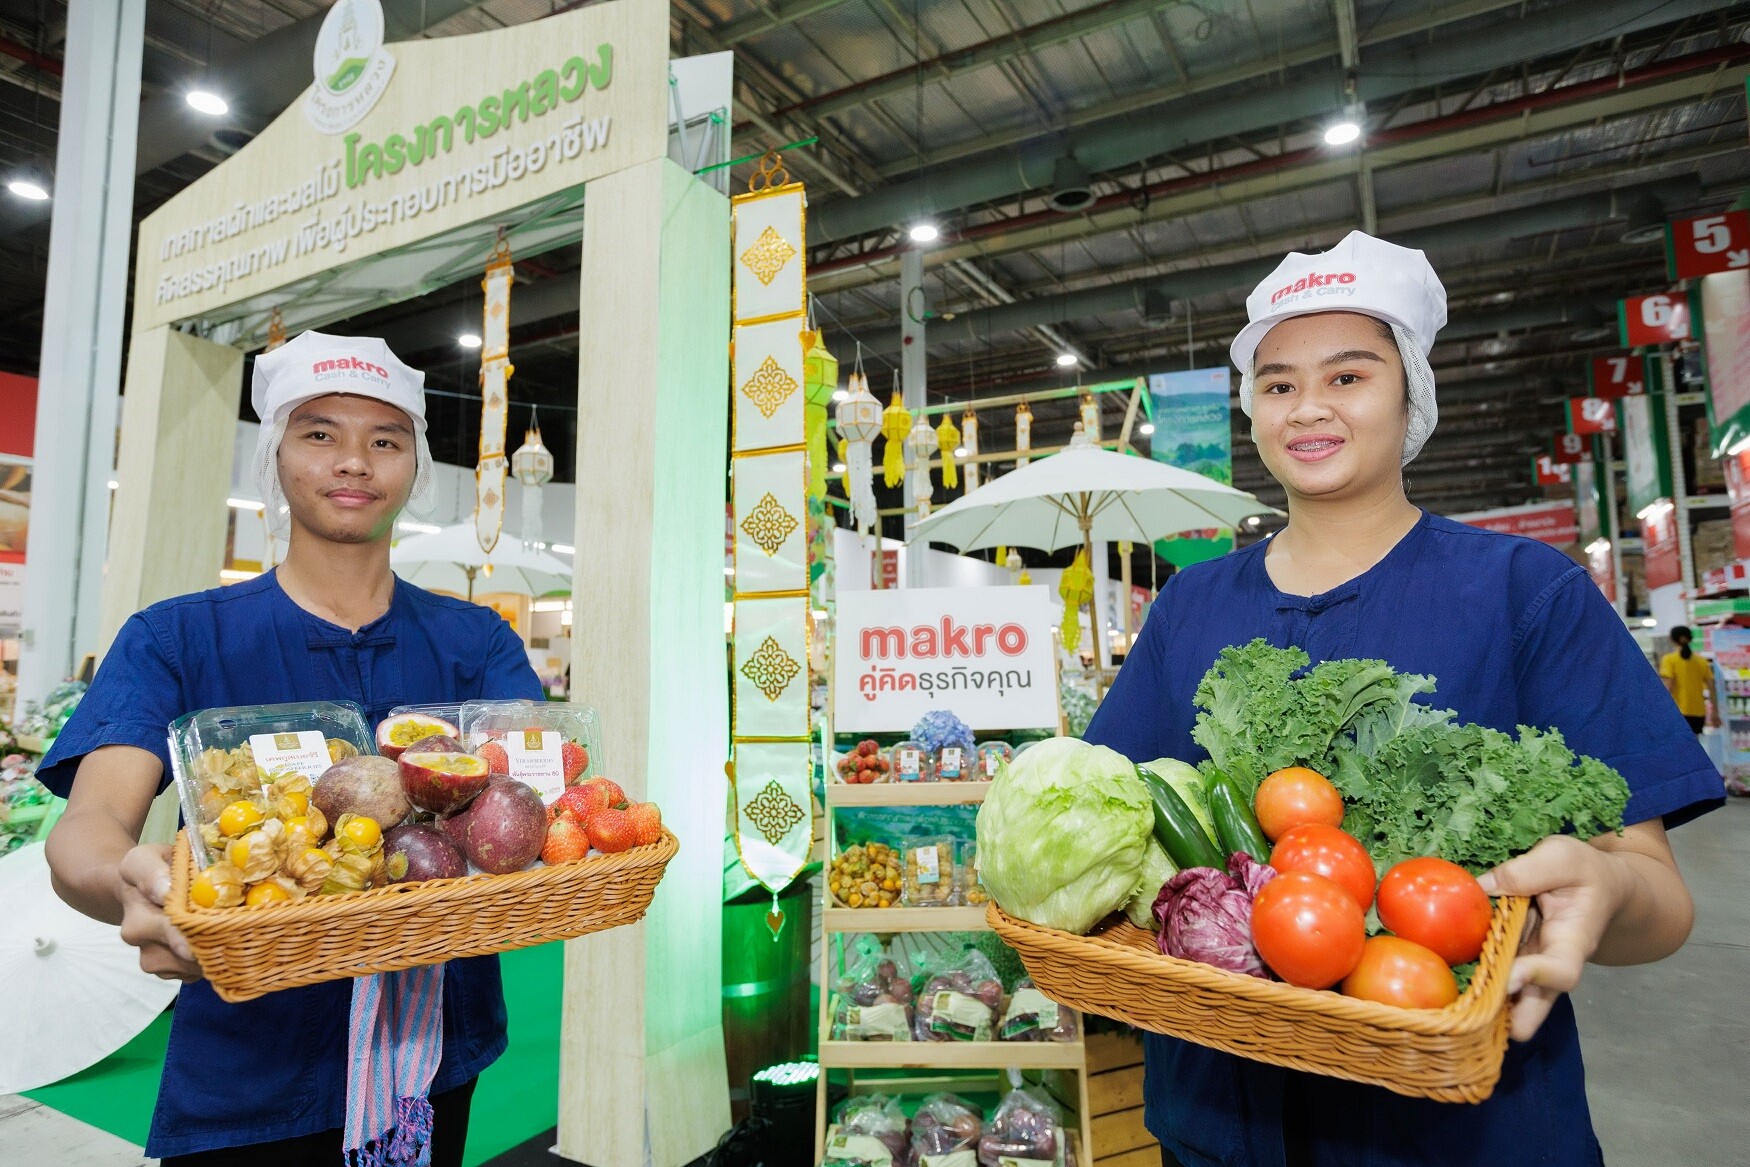 "แม็คโคร" จับมือโครงการหลวง ชูนโยบายเคียงข้างเกษตรกรไทย พัฒนาผลผลิตคุณภาพ ตอบโจทย์ผู้ประกอบการ ขยายตลาดผักผลไม้ ทุกสาขาทั่วประเทศ